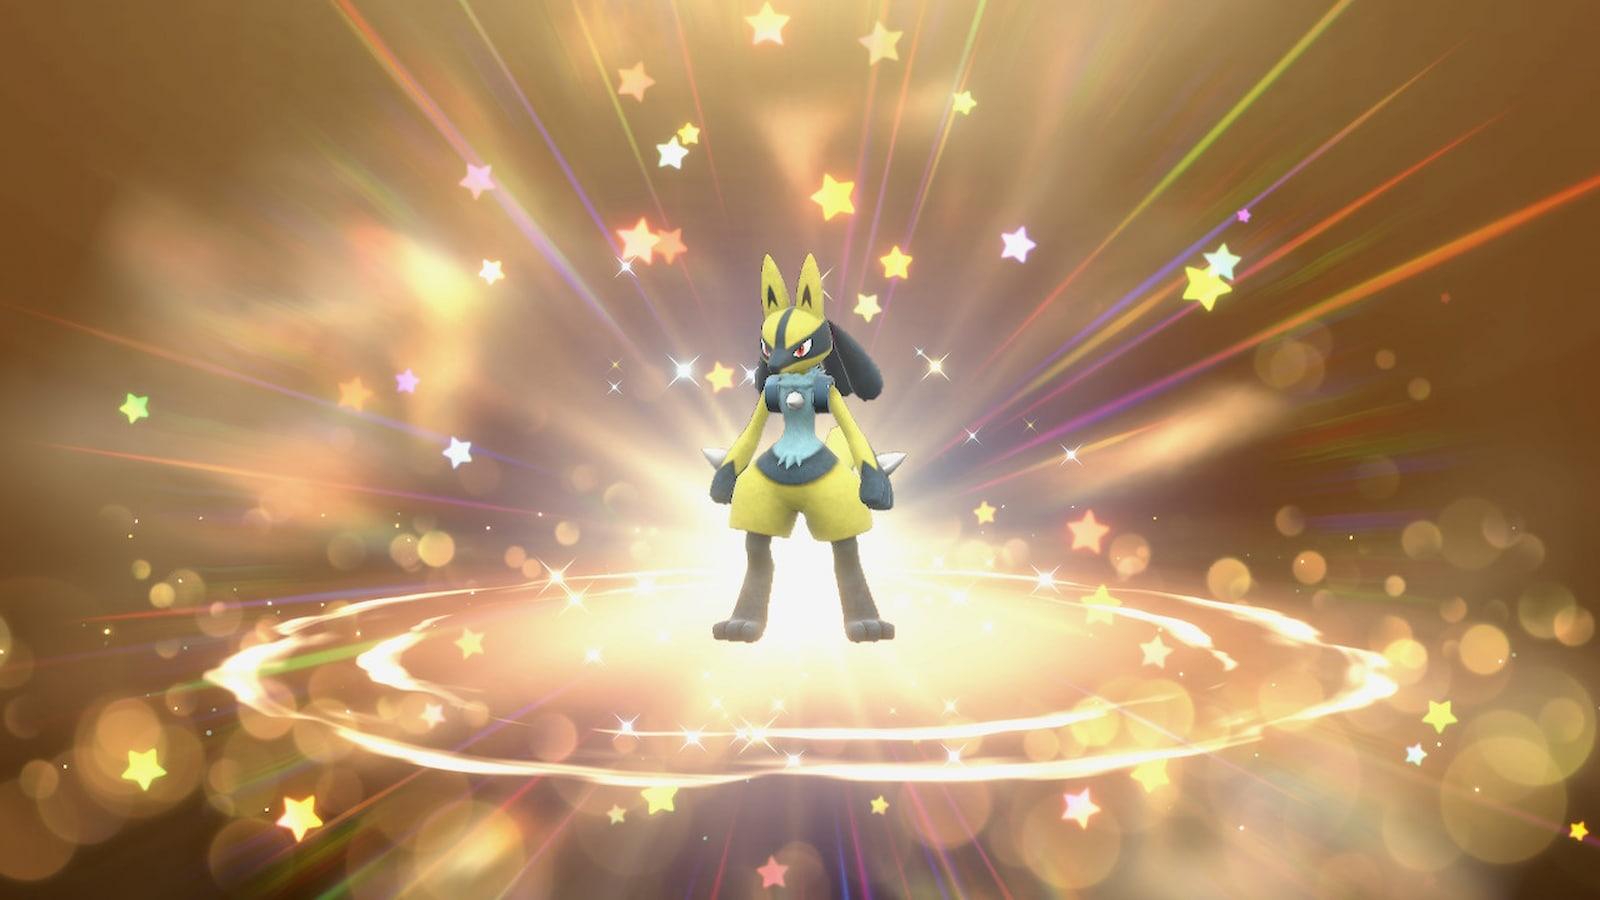 Shiny Lucario - Pokemon Go